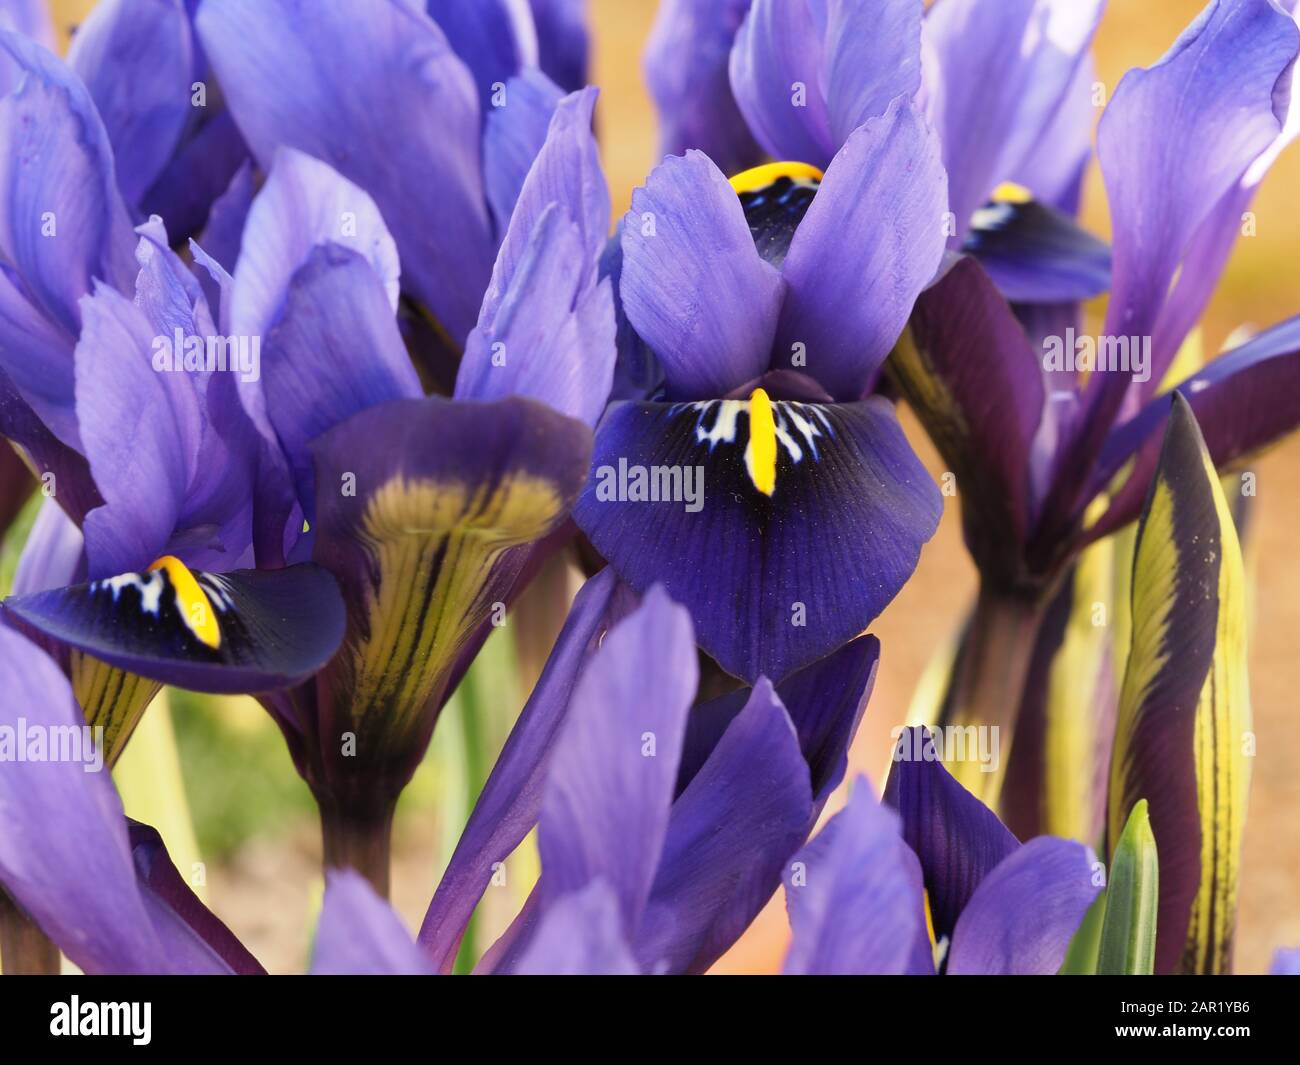 Closeup of beautiful miniature purple iris flowers, Iris histrioides variety Palm Springs Stock Photo